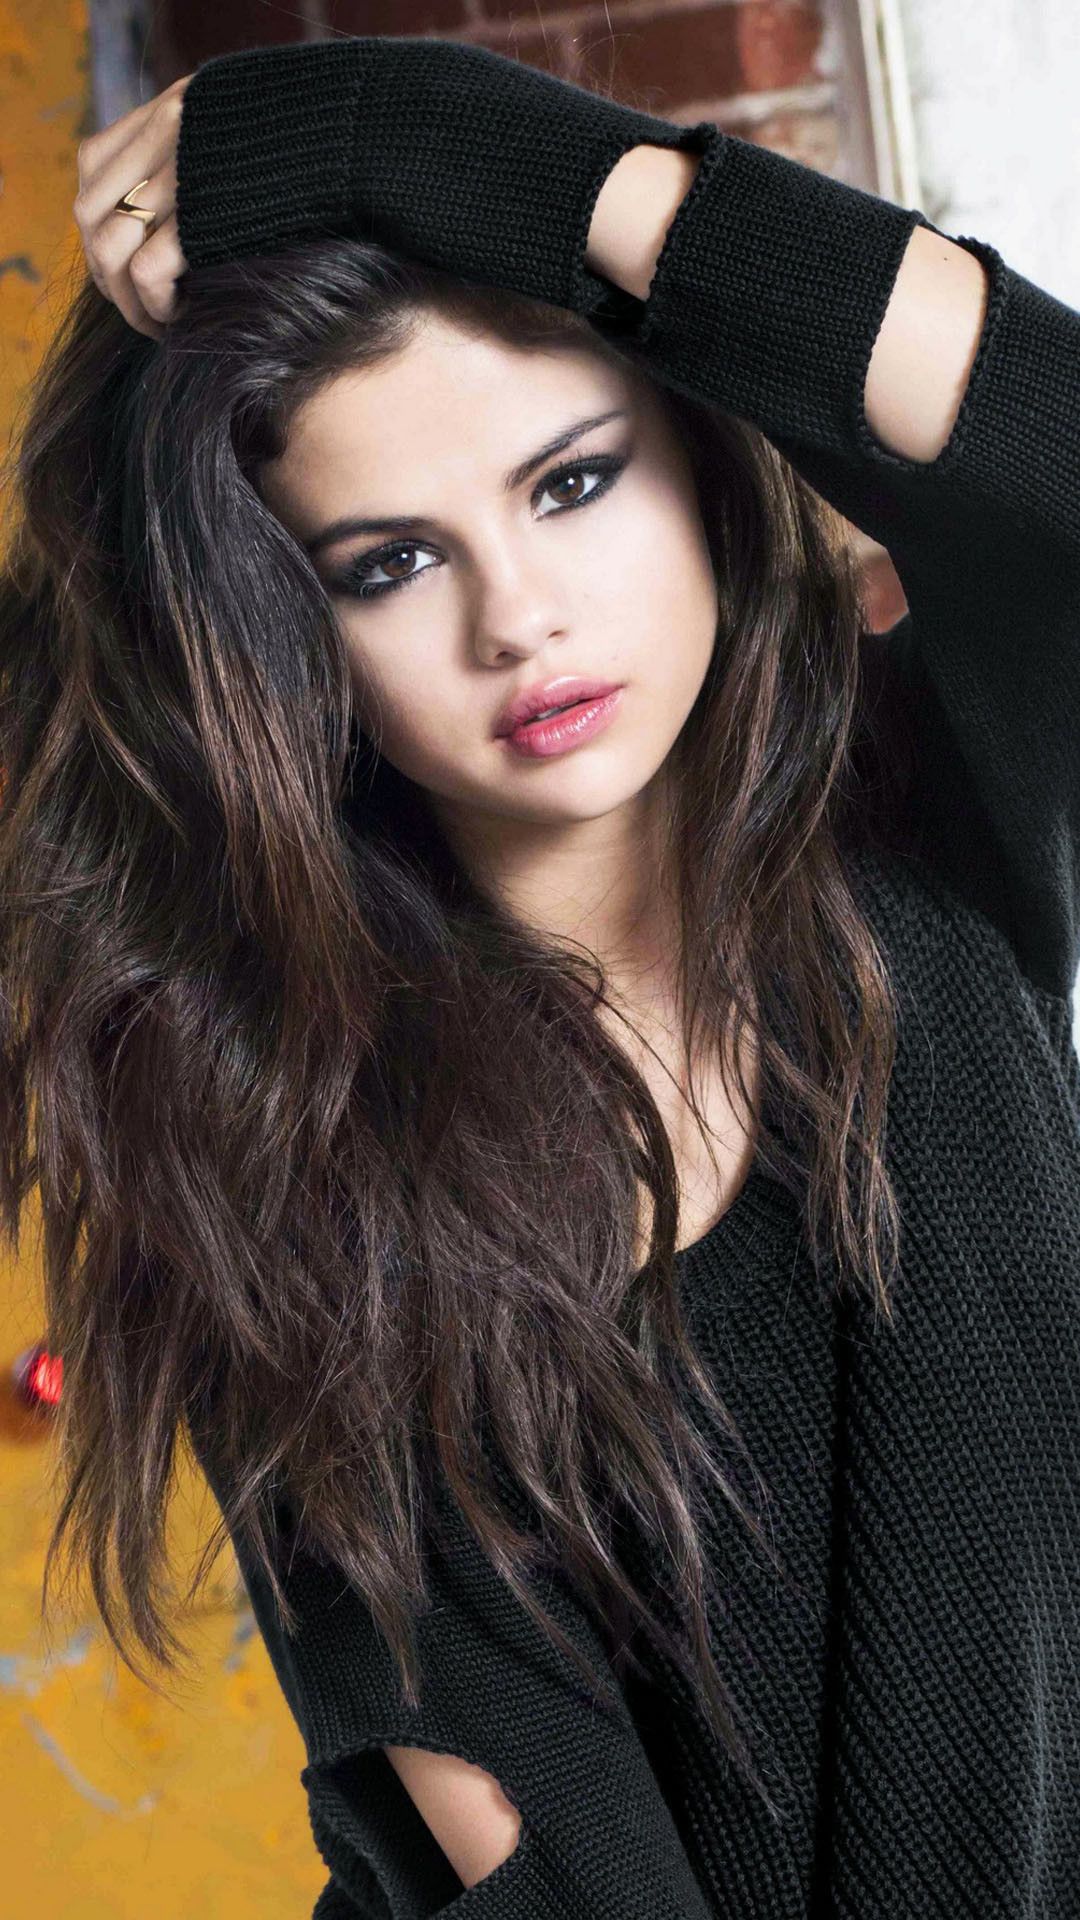 56 Selena Gomez 2020 Mobile Wallpapers  WallpaperSafari